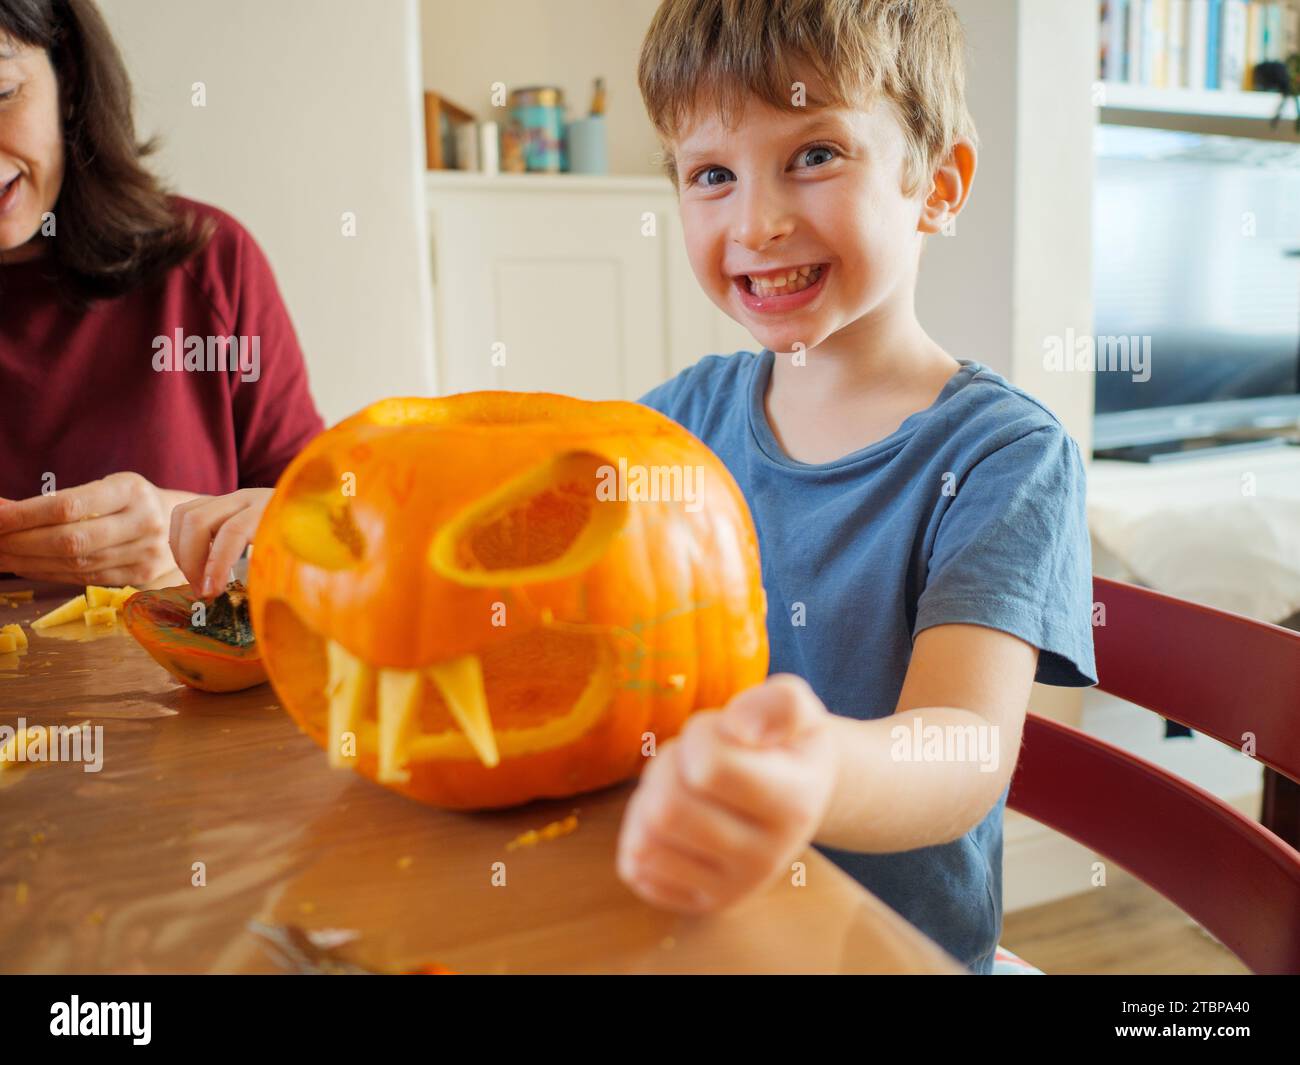 Sourire heureux jeune enfant ayant du plaisir à faire la citrouille effrayante visage pour célébrer halloween à la maison, Royaume-Uni Banque D'Images